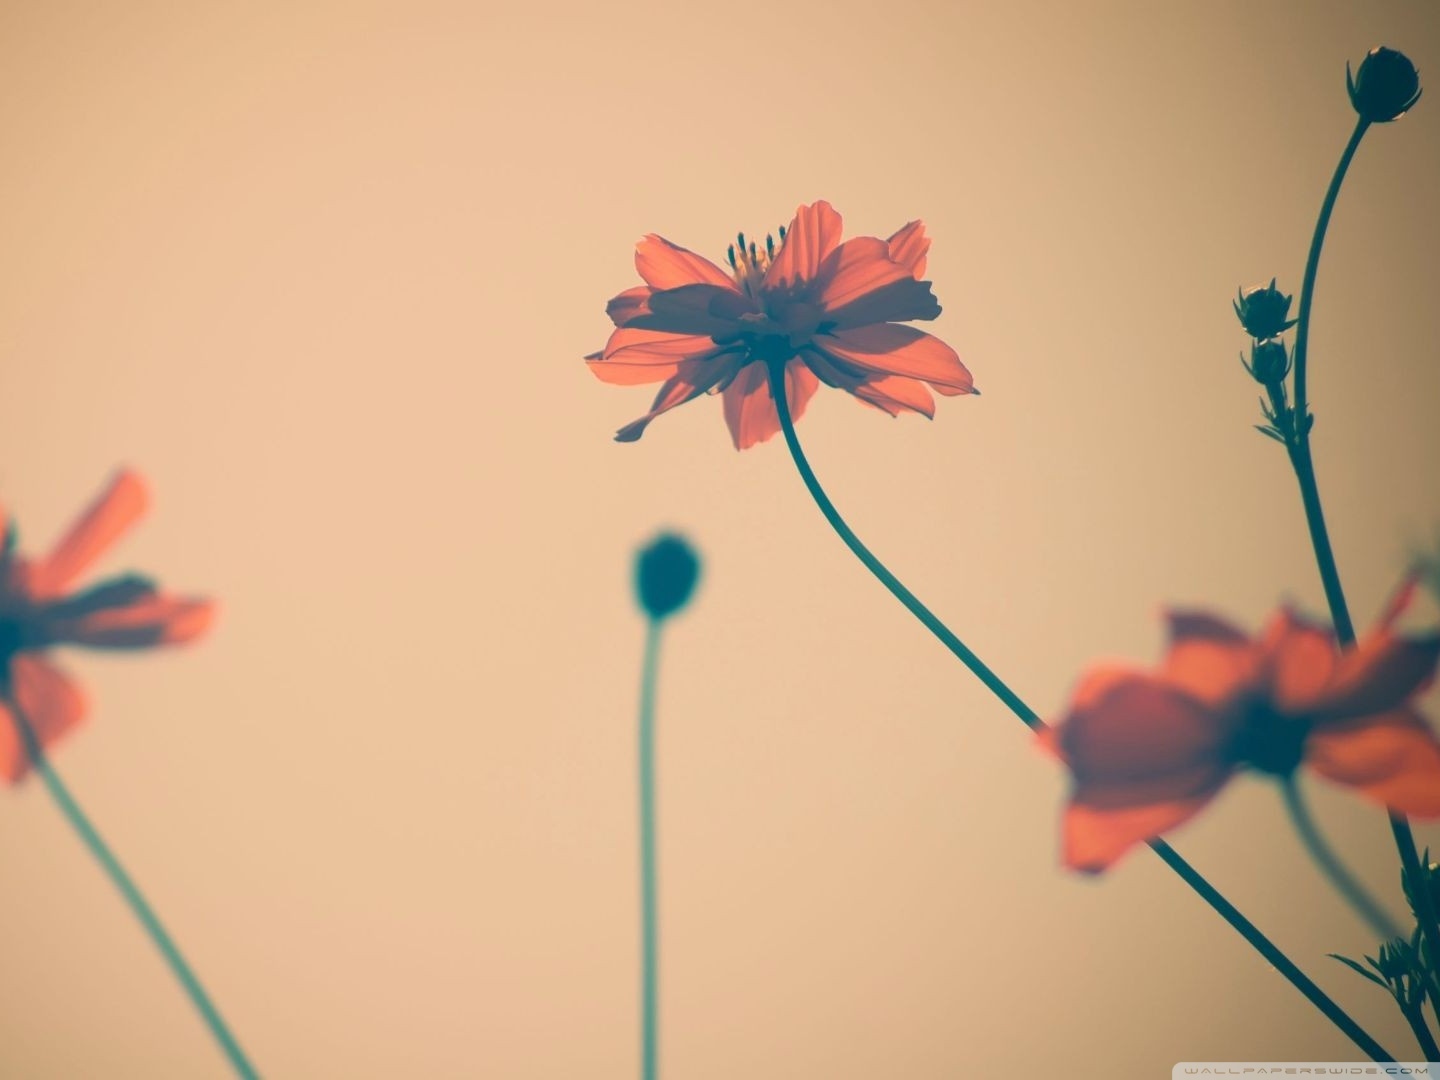 Flowers Tumblr HD desktop wallpaper : Widescreen : High Definition ...